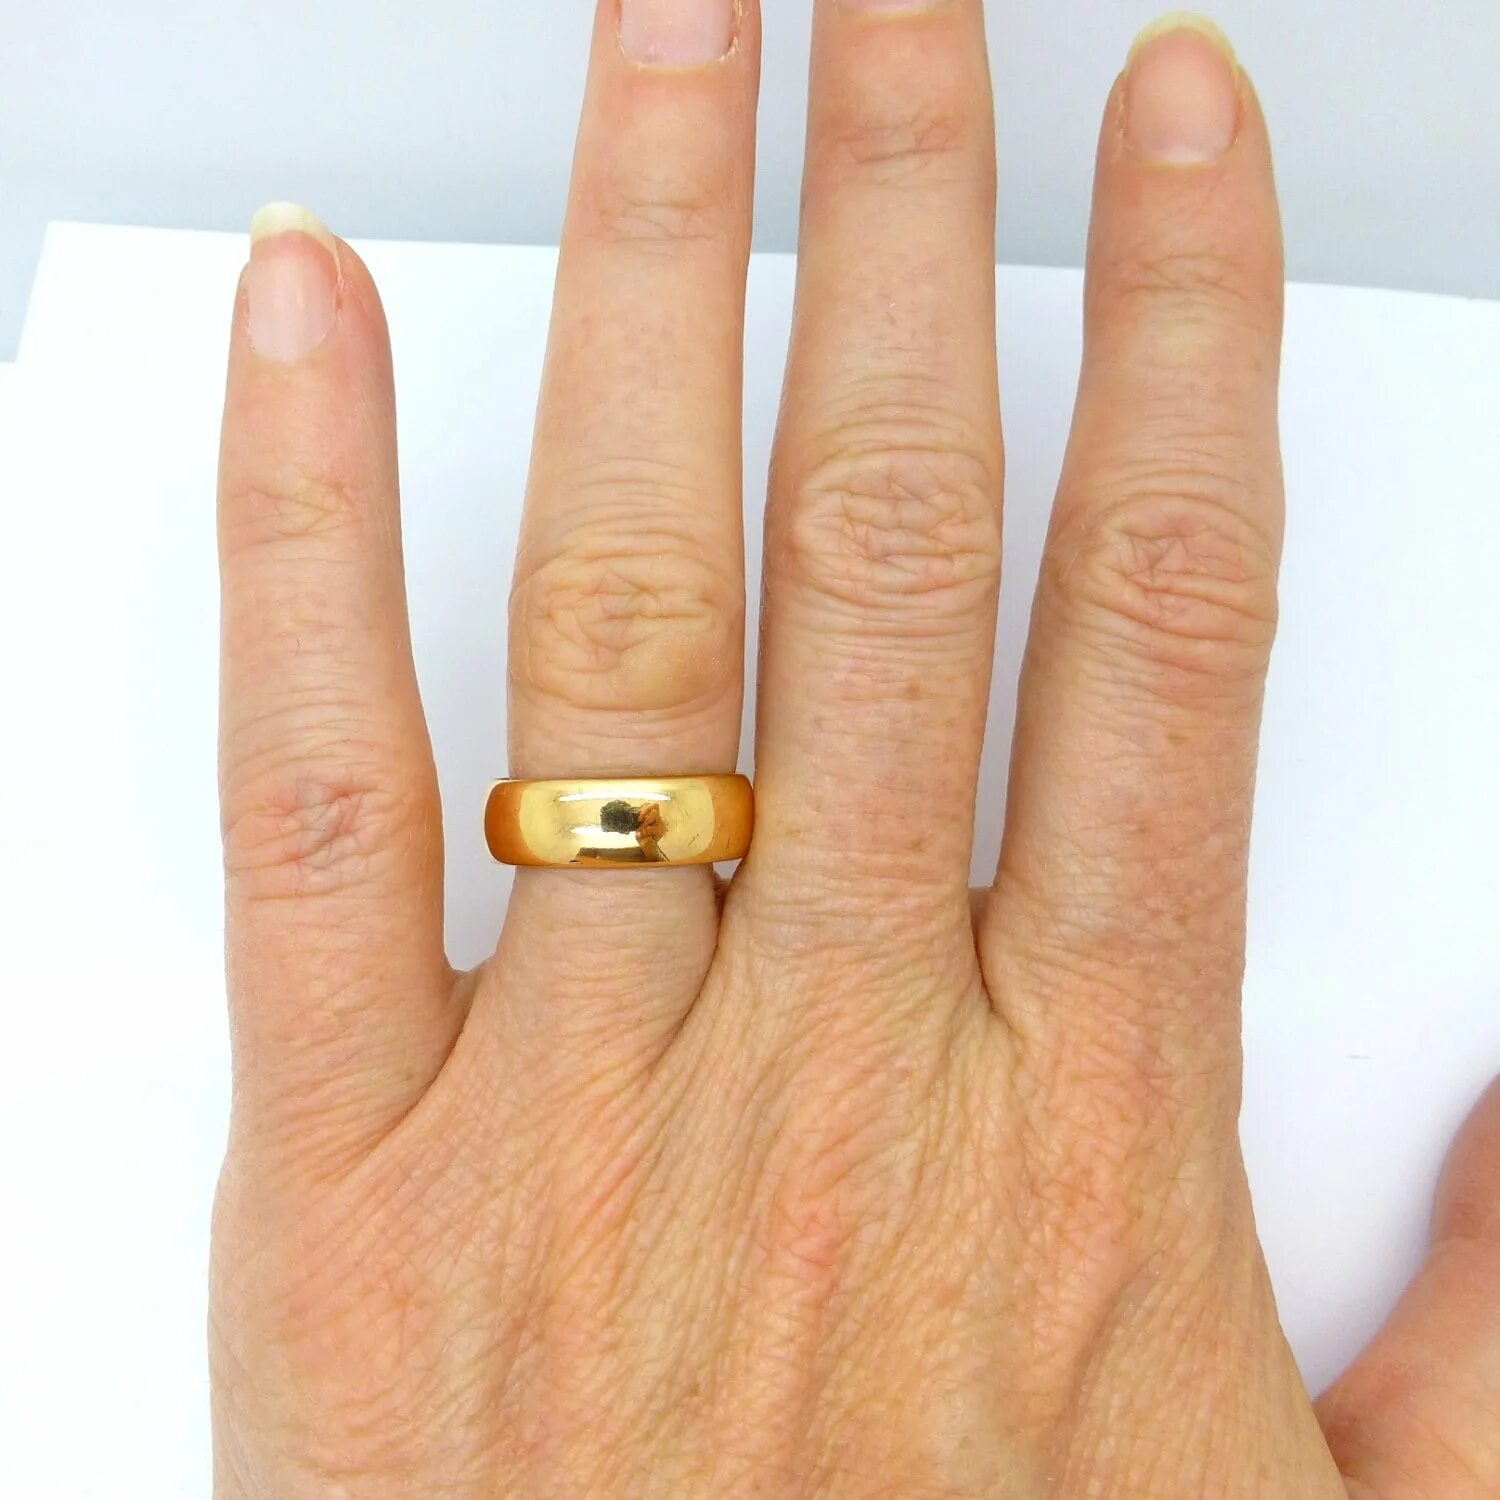 Широкое обручальное кольцо на пальце. Широкое обручальное кольцо на руке. Широкое кольцо на палец. Толстое обручальное кольцо мужское. Толстое золотое кольцо